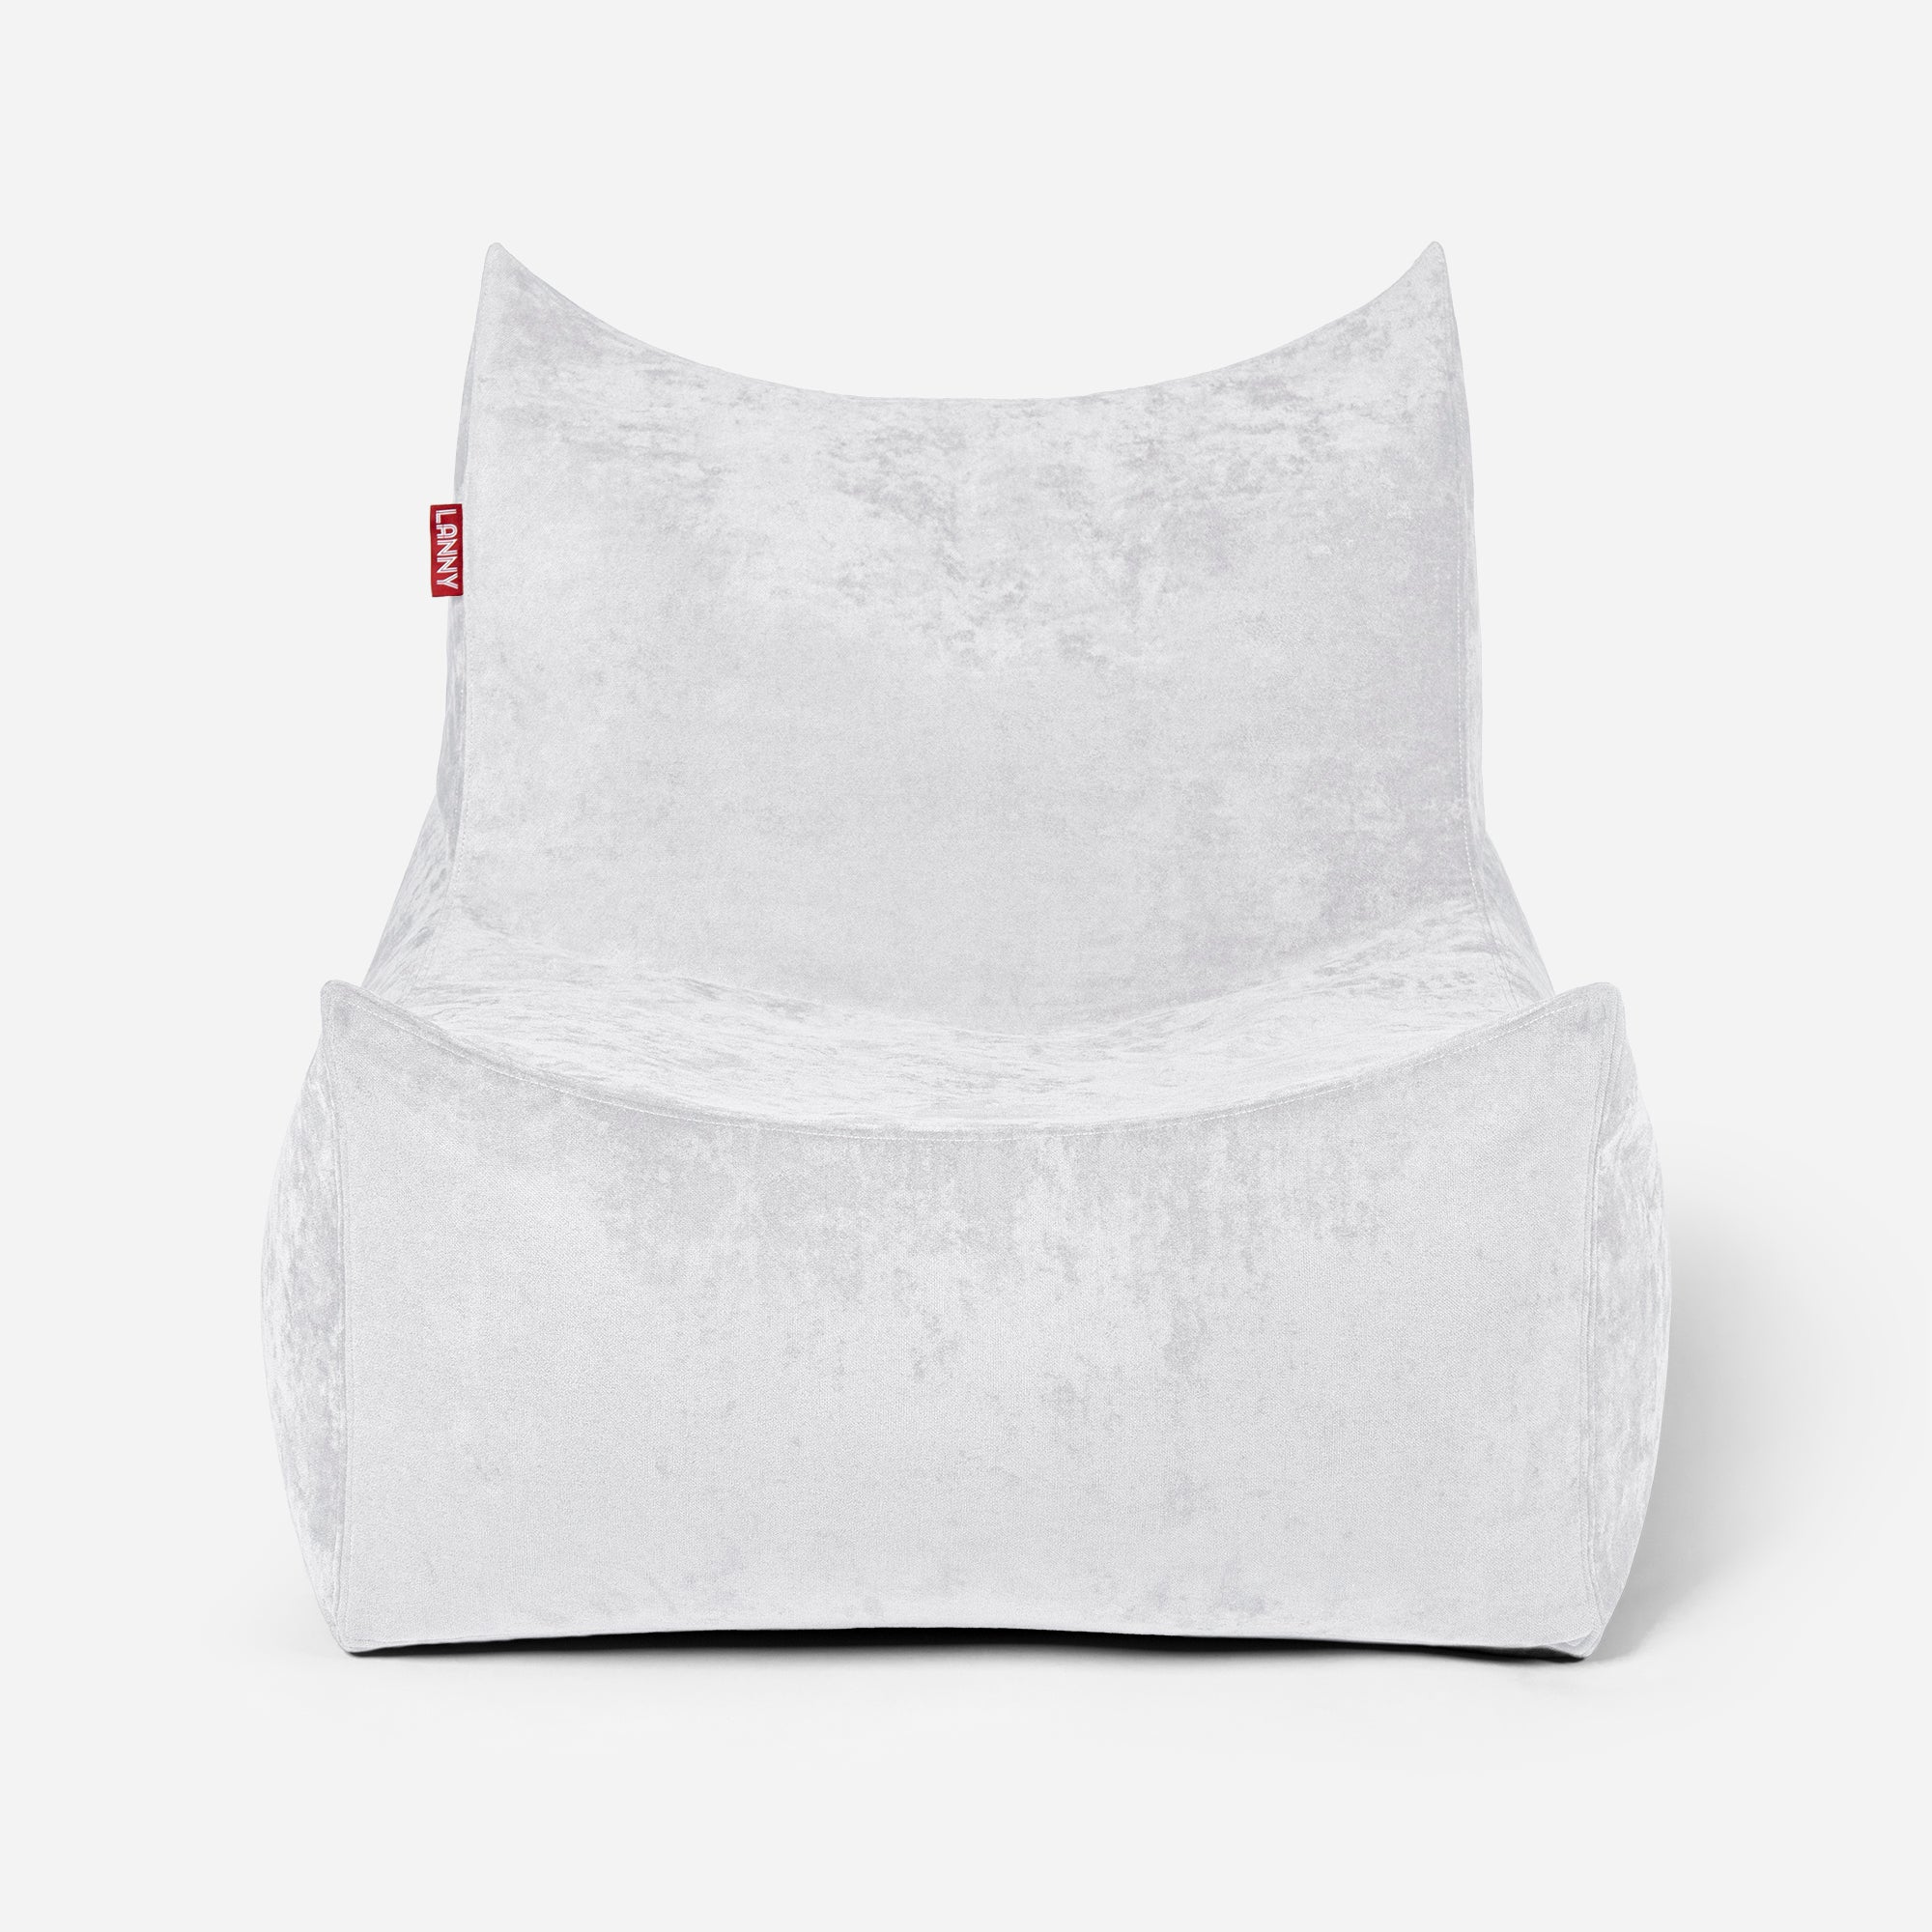 Quadro Aldo White Bean bag Chair